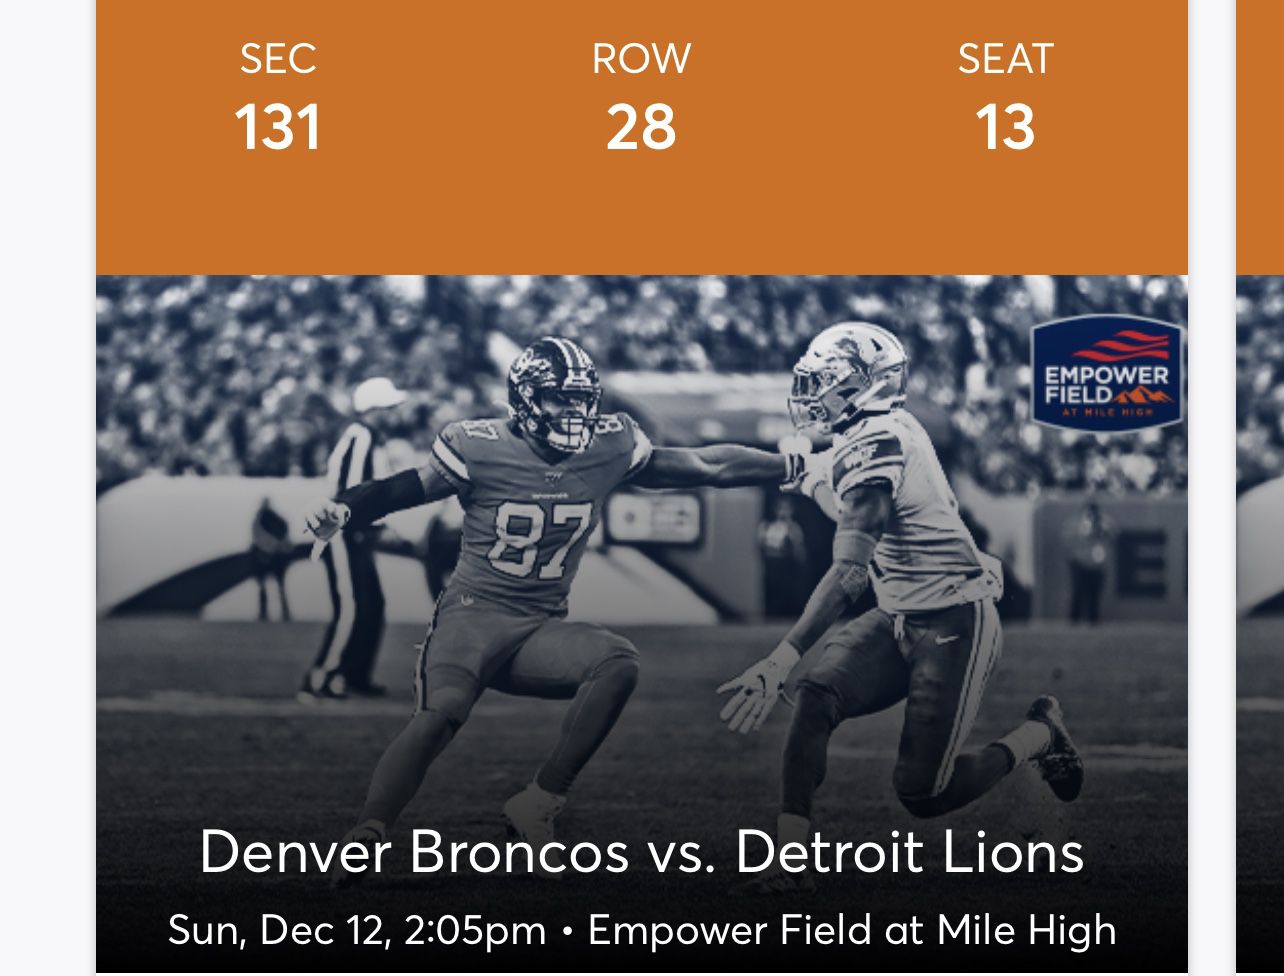 Two tickets for the Denver Broncos vs Detroit Lions Dec 12th